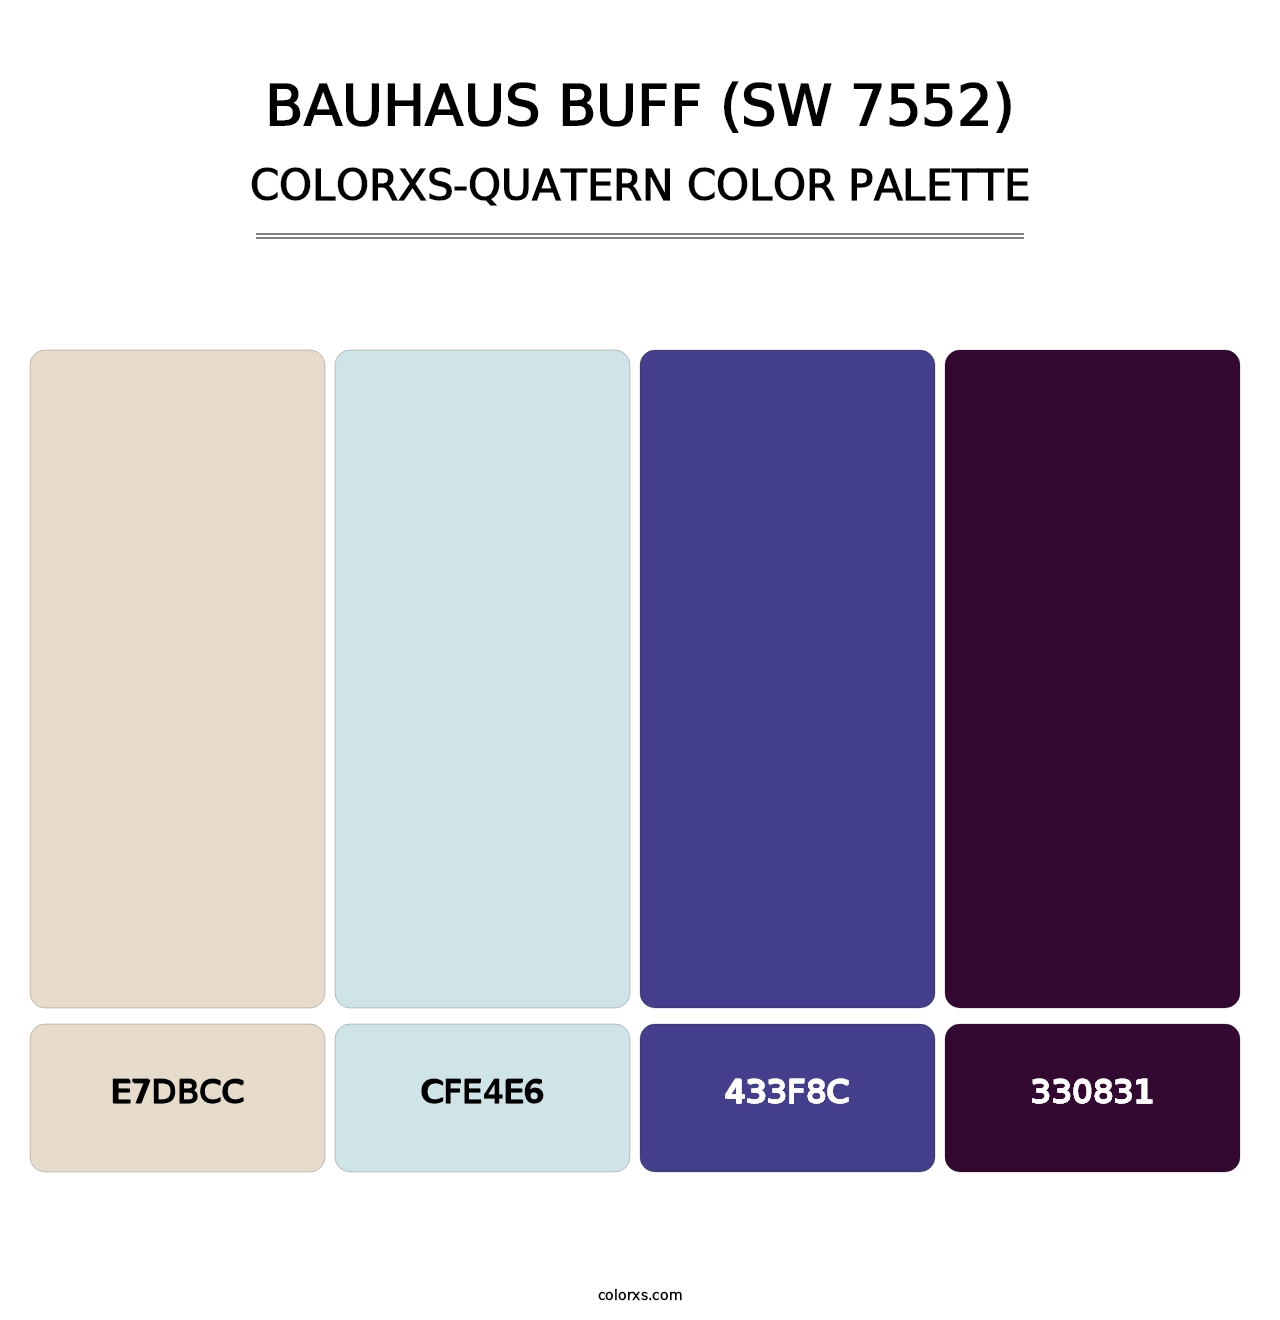 Bauhaus Buff (SW 7552) - Colorxs Quatern Palette